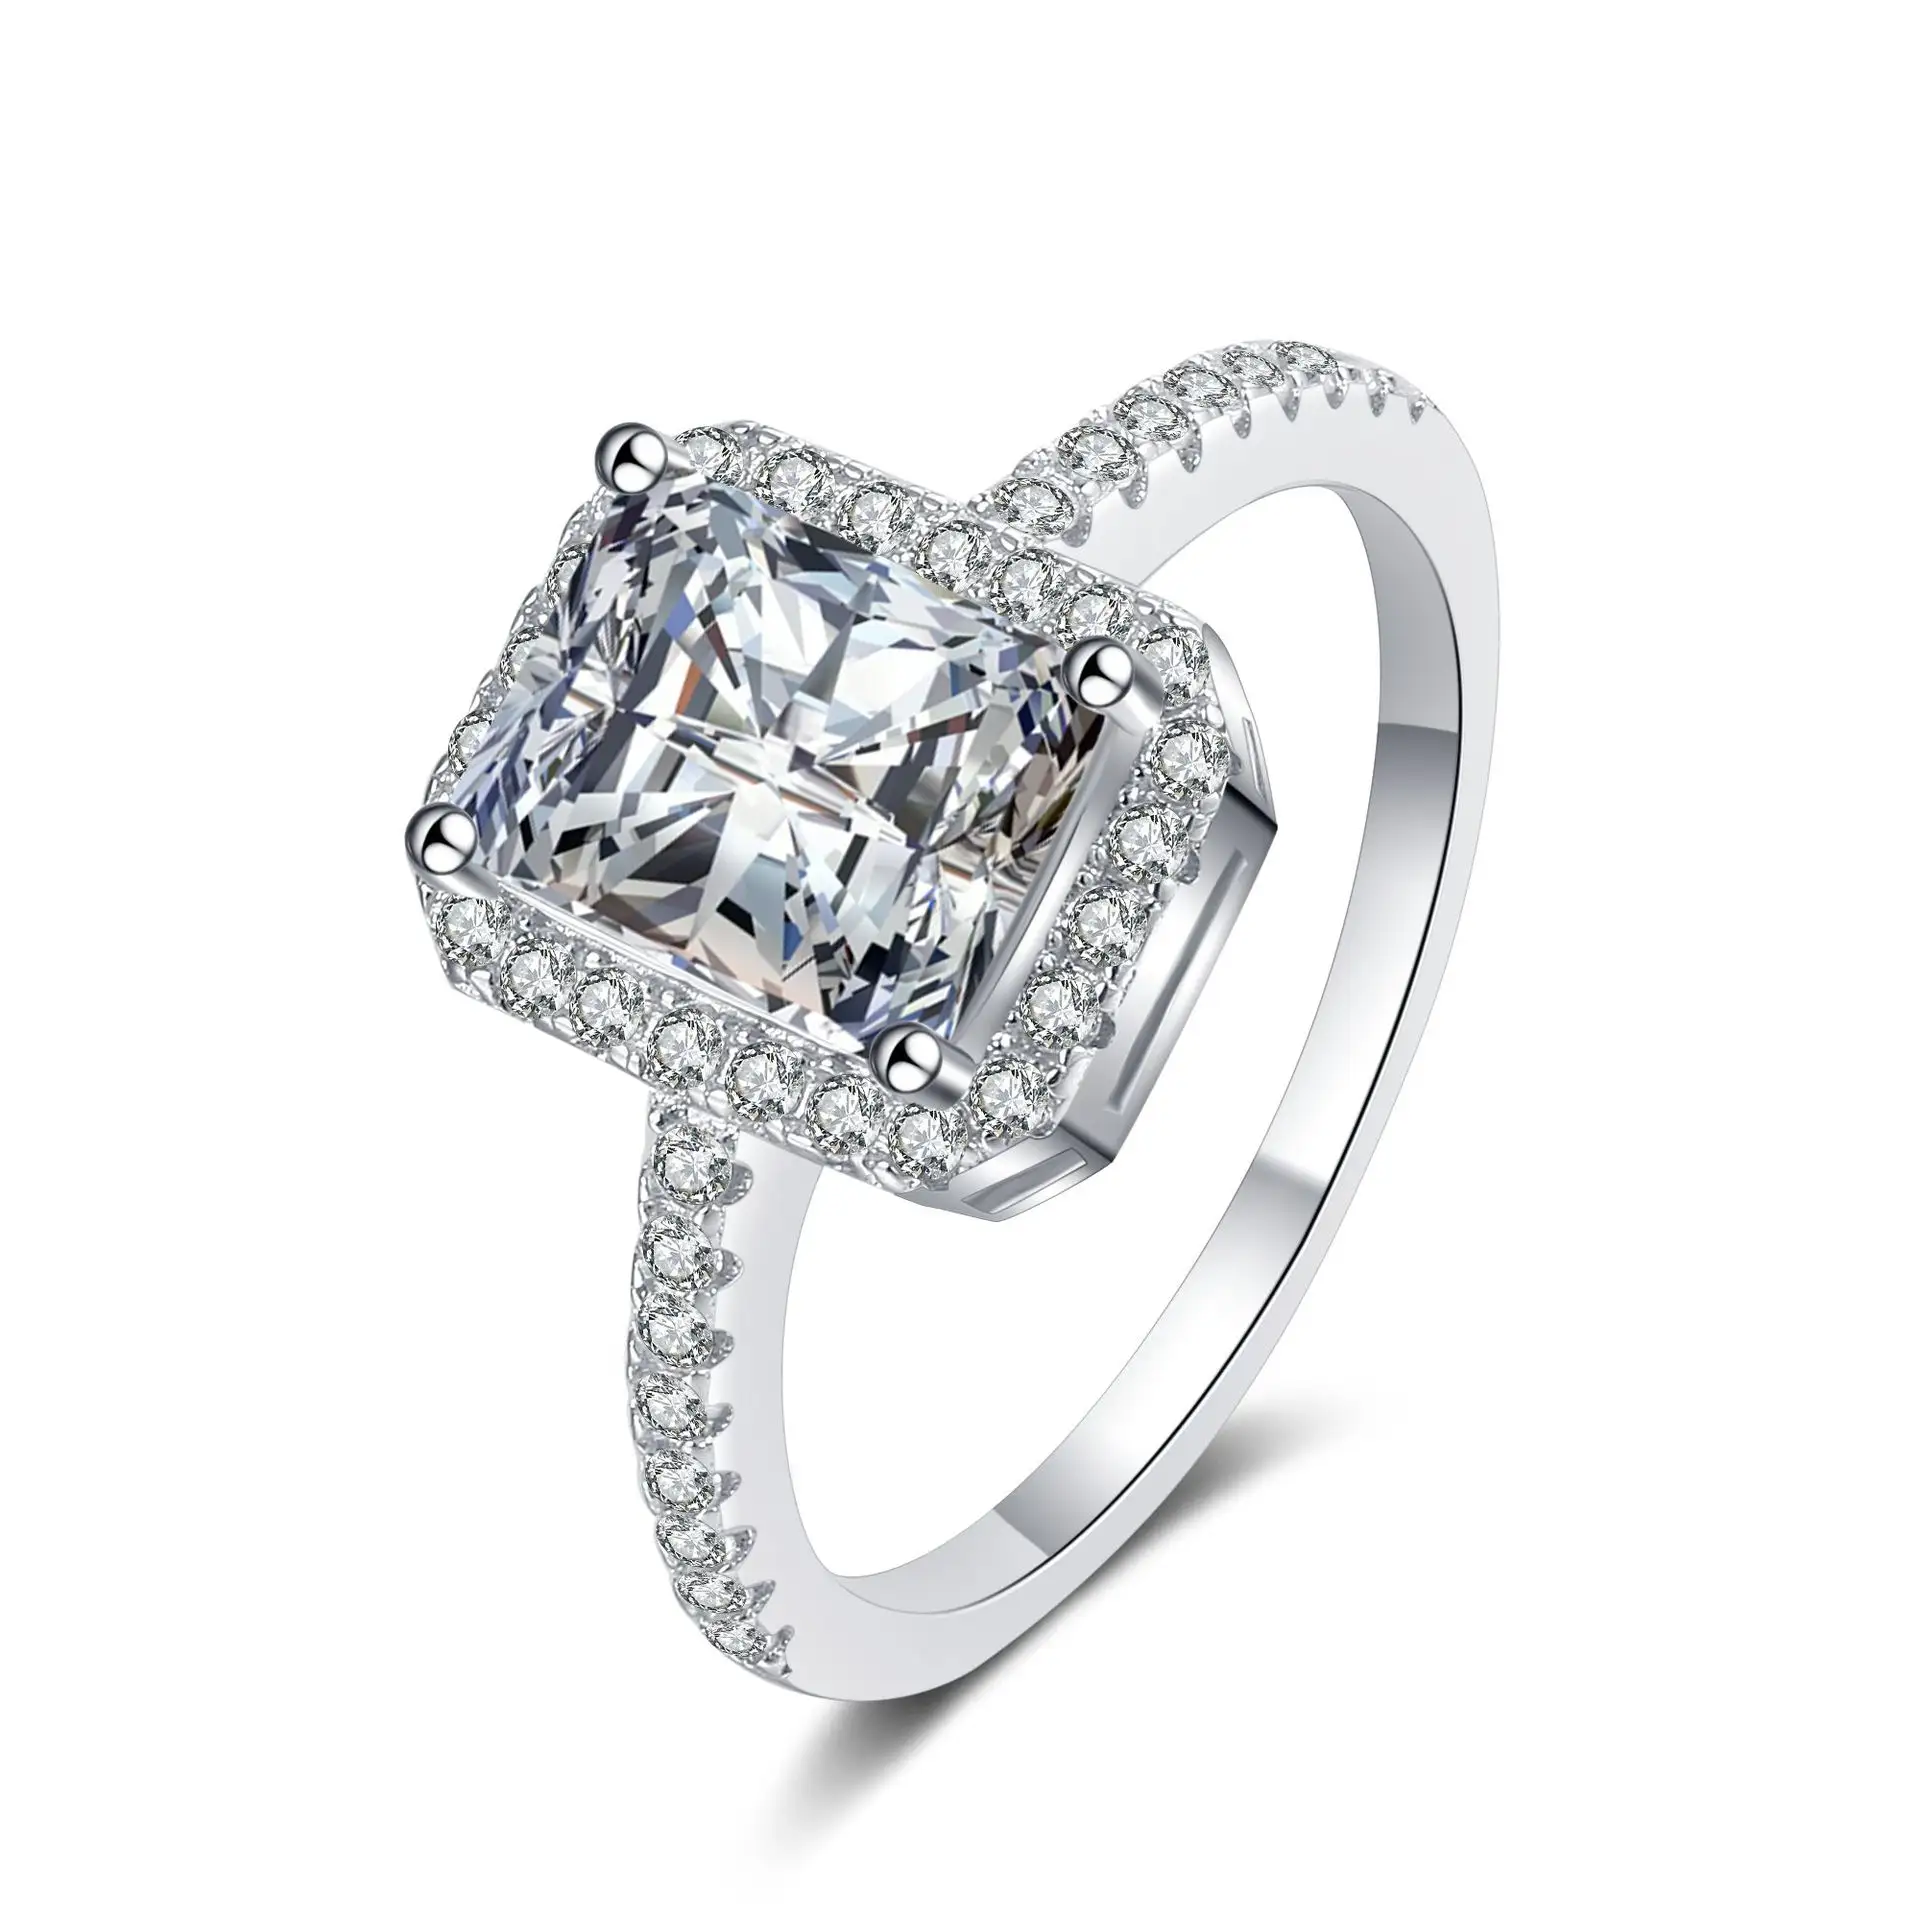 Großhandel Original Design 925 Sterling Silber 1ct 2 ct Moissan ite Diamond Frauen Ehering Mode Schmuck Ringe